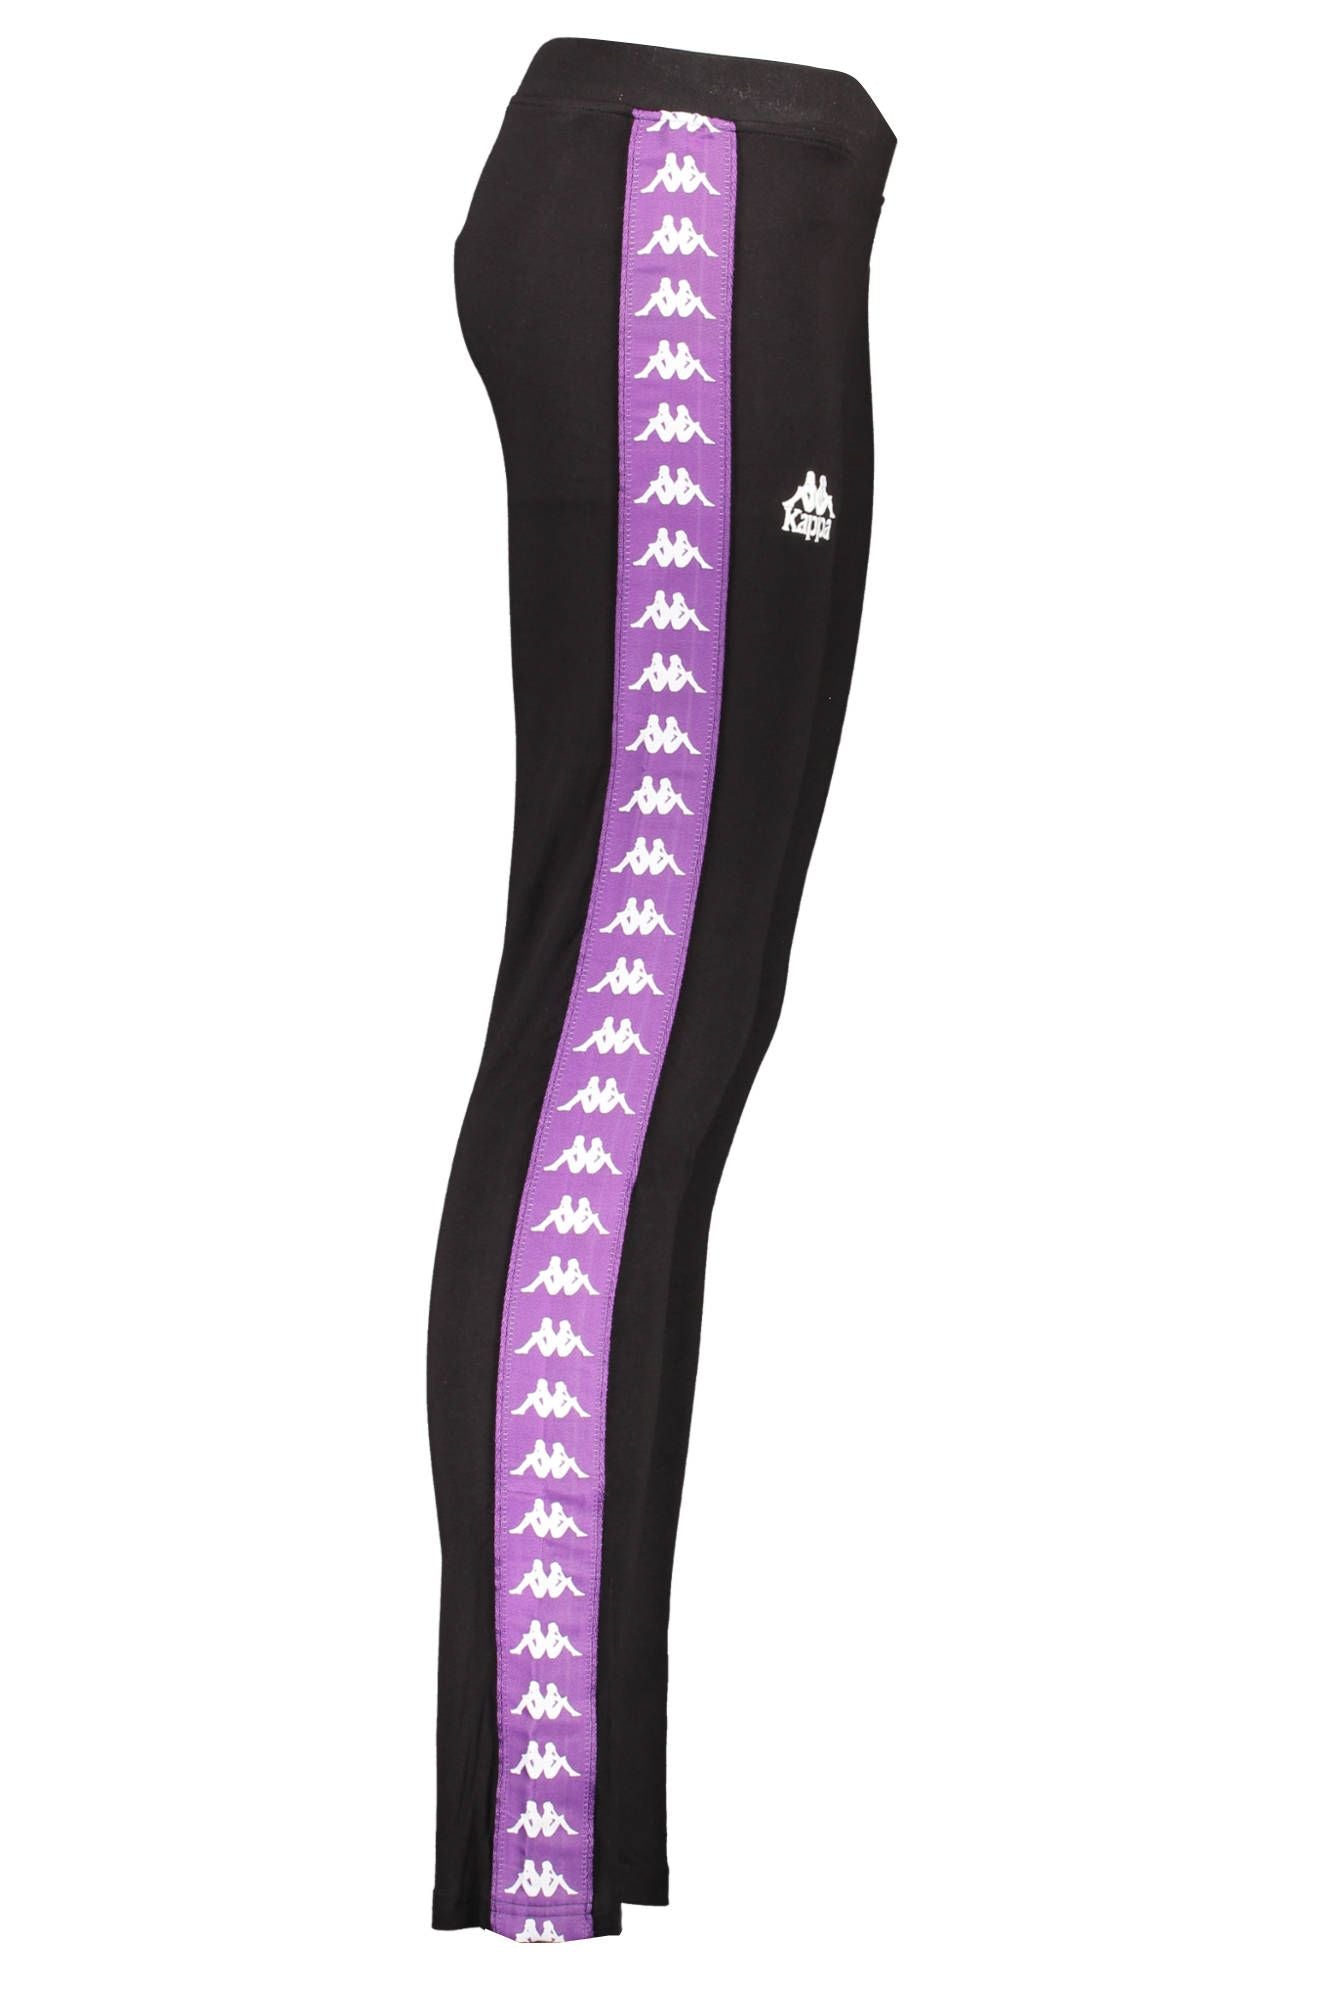 Sleek Kappa Logo Leggings with Contrast Details